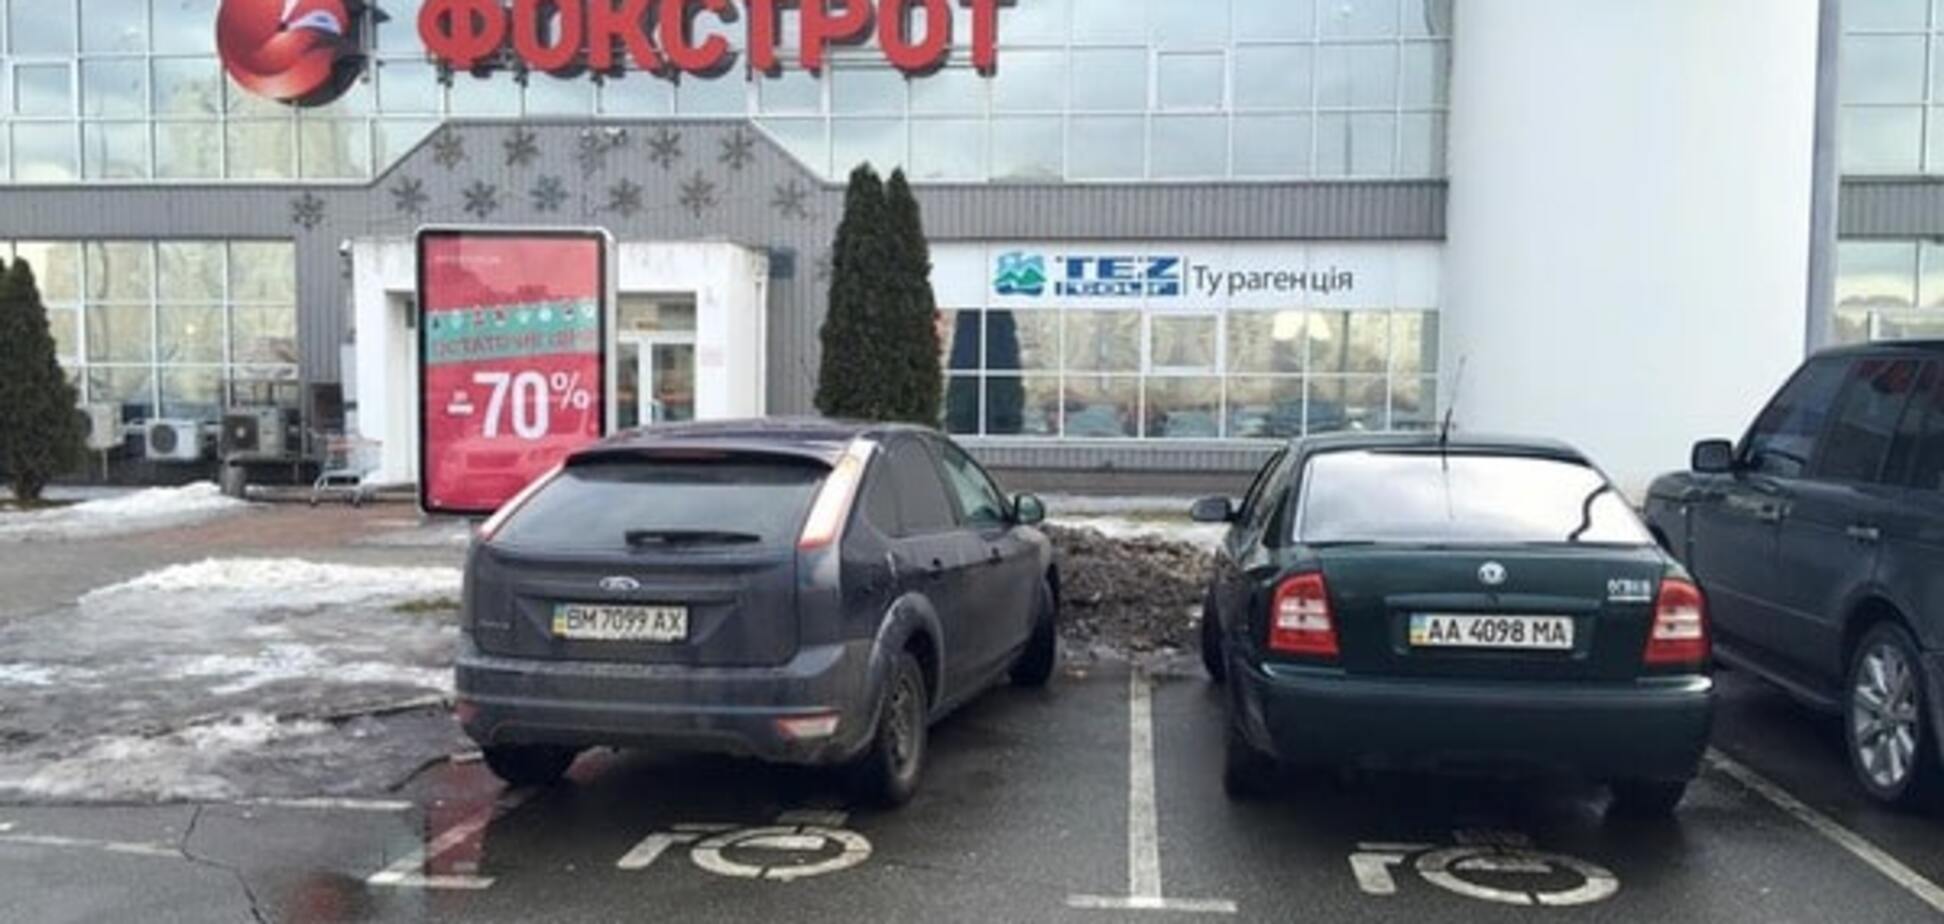 Інваліди почекають: у Києві автохами зайняли чужі місця на парковці